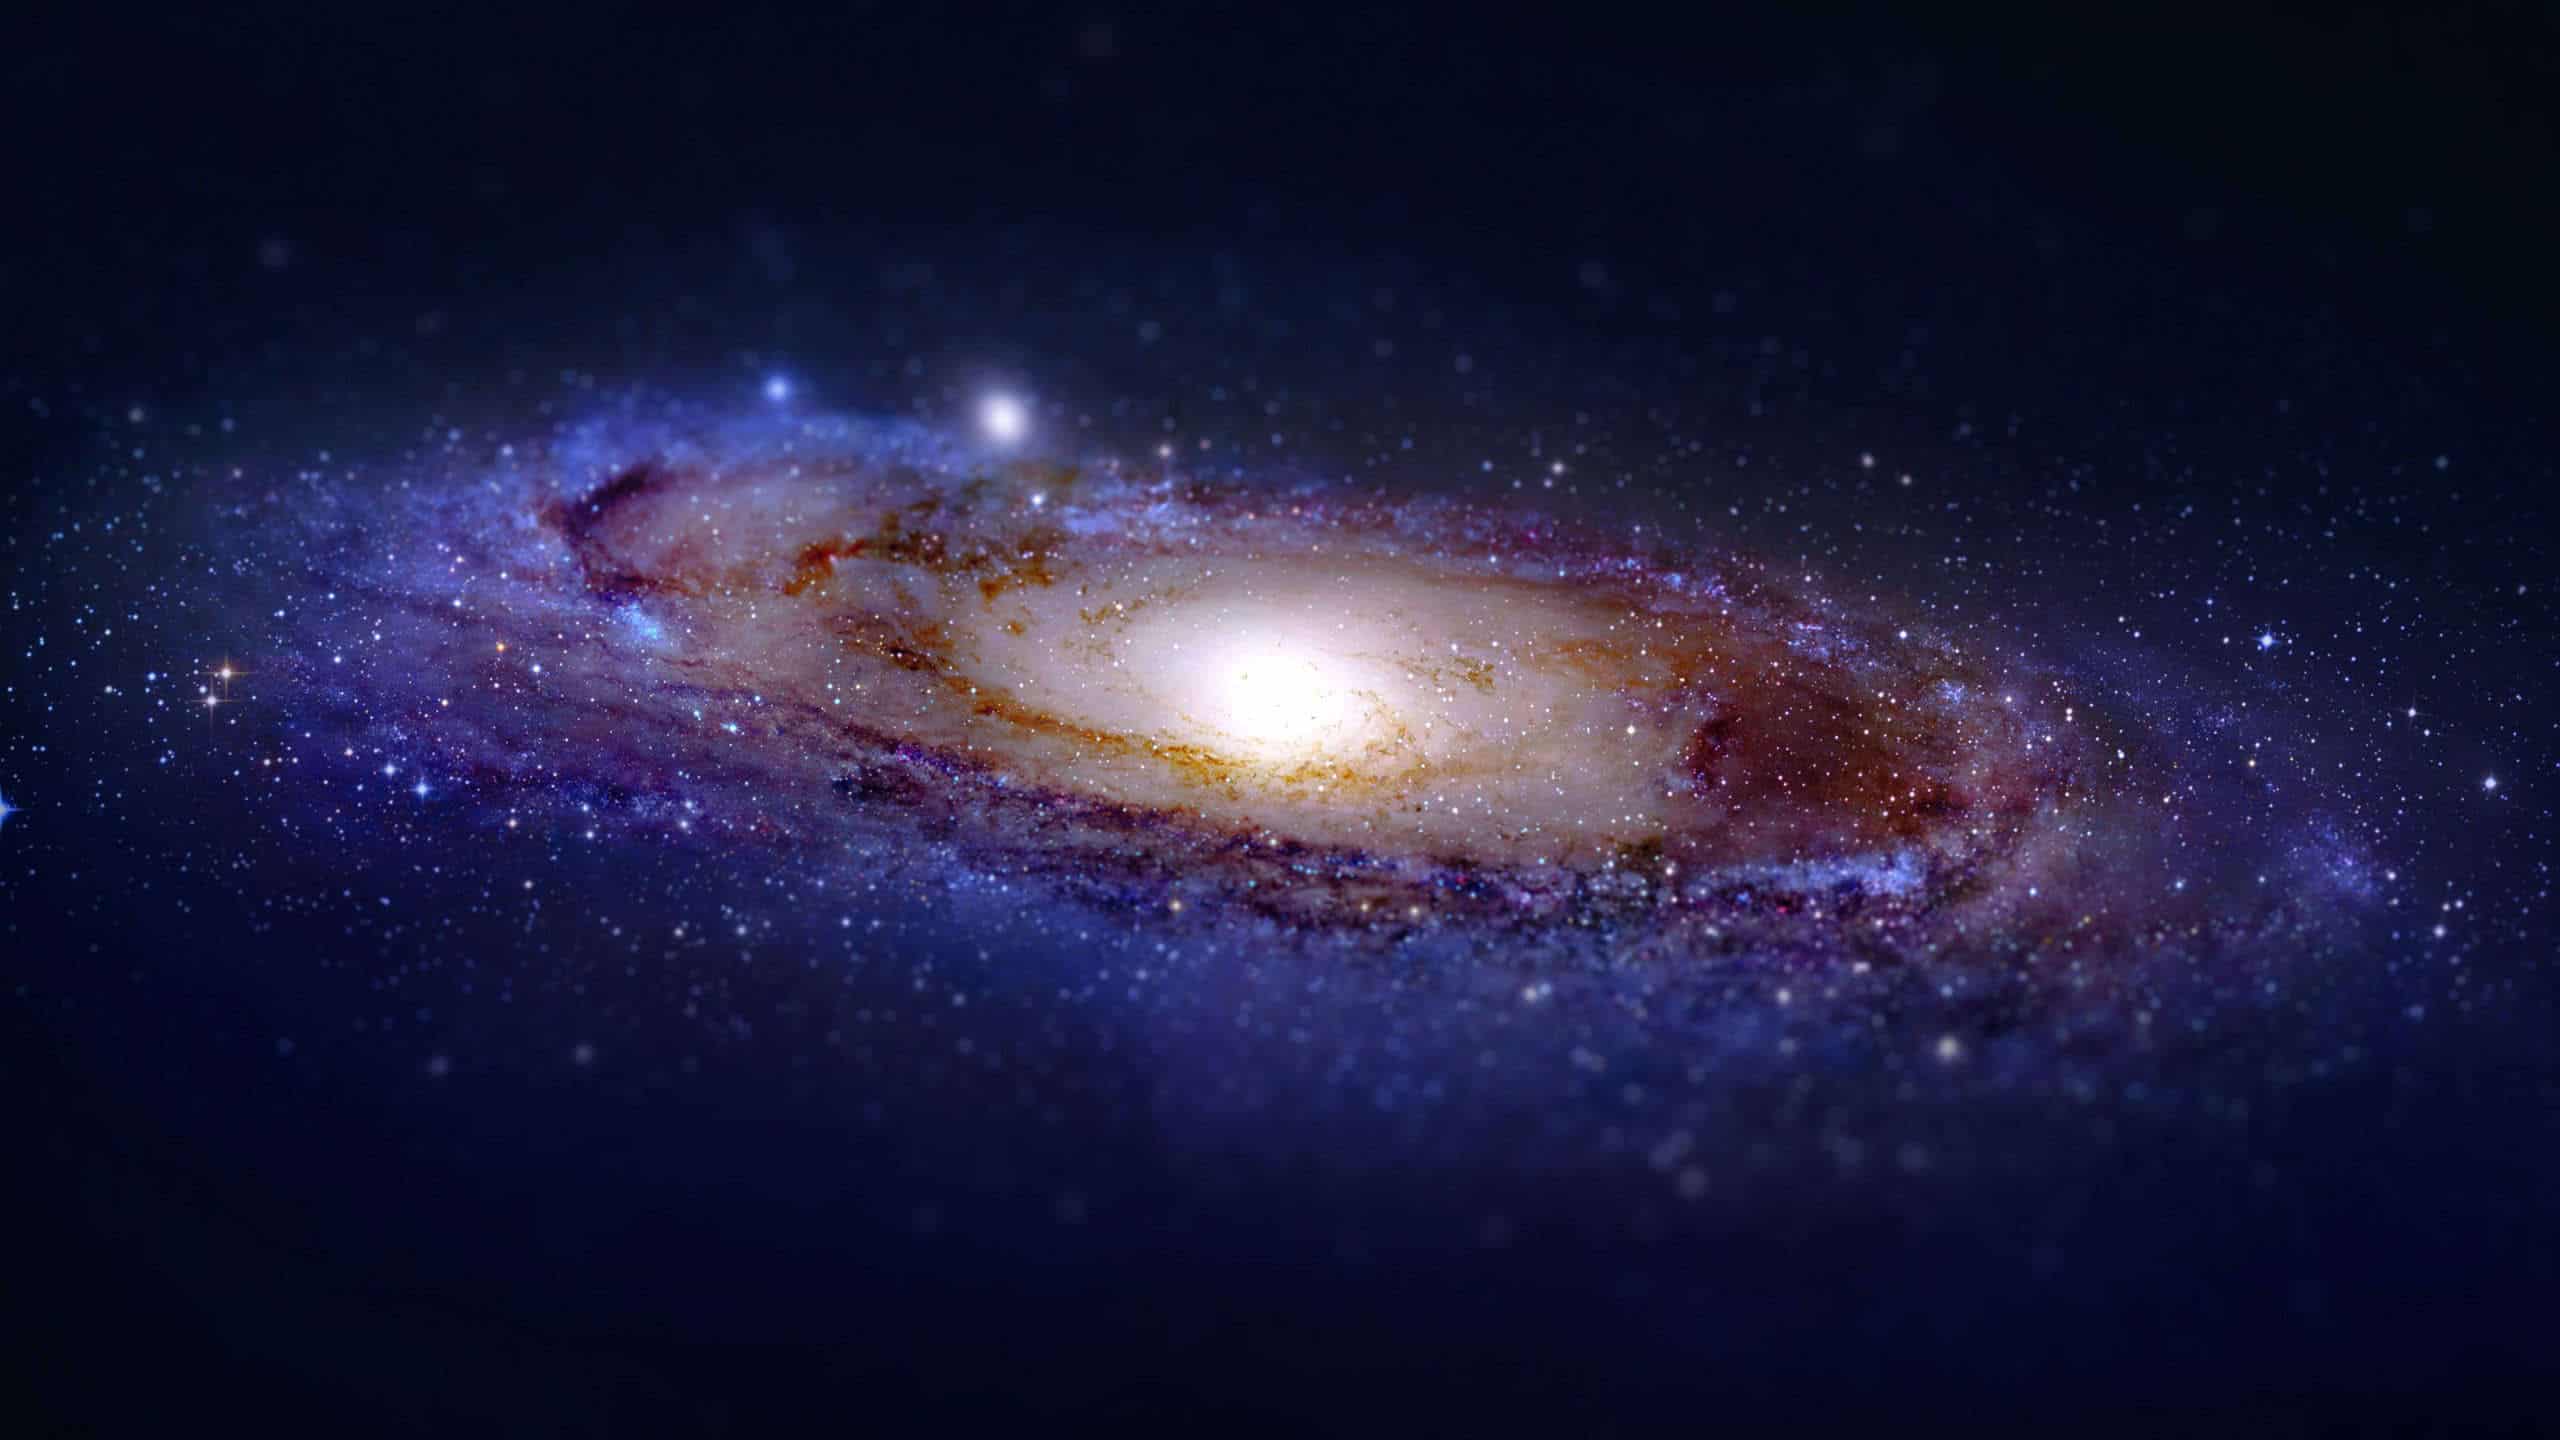 Andromeda Galaxy Wqhd 1440p Wallpaper Pixelz HD Wallpapers Download Free Images Wallpaper [wallpaper981.blogspot.com]